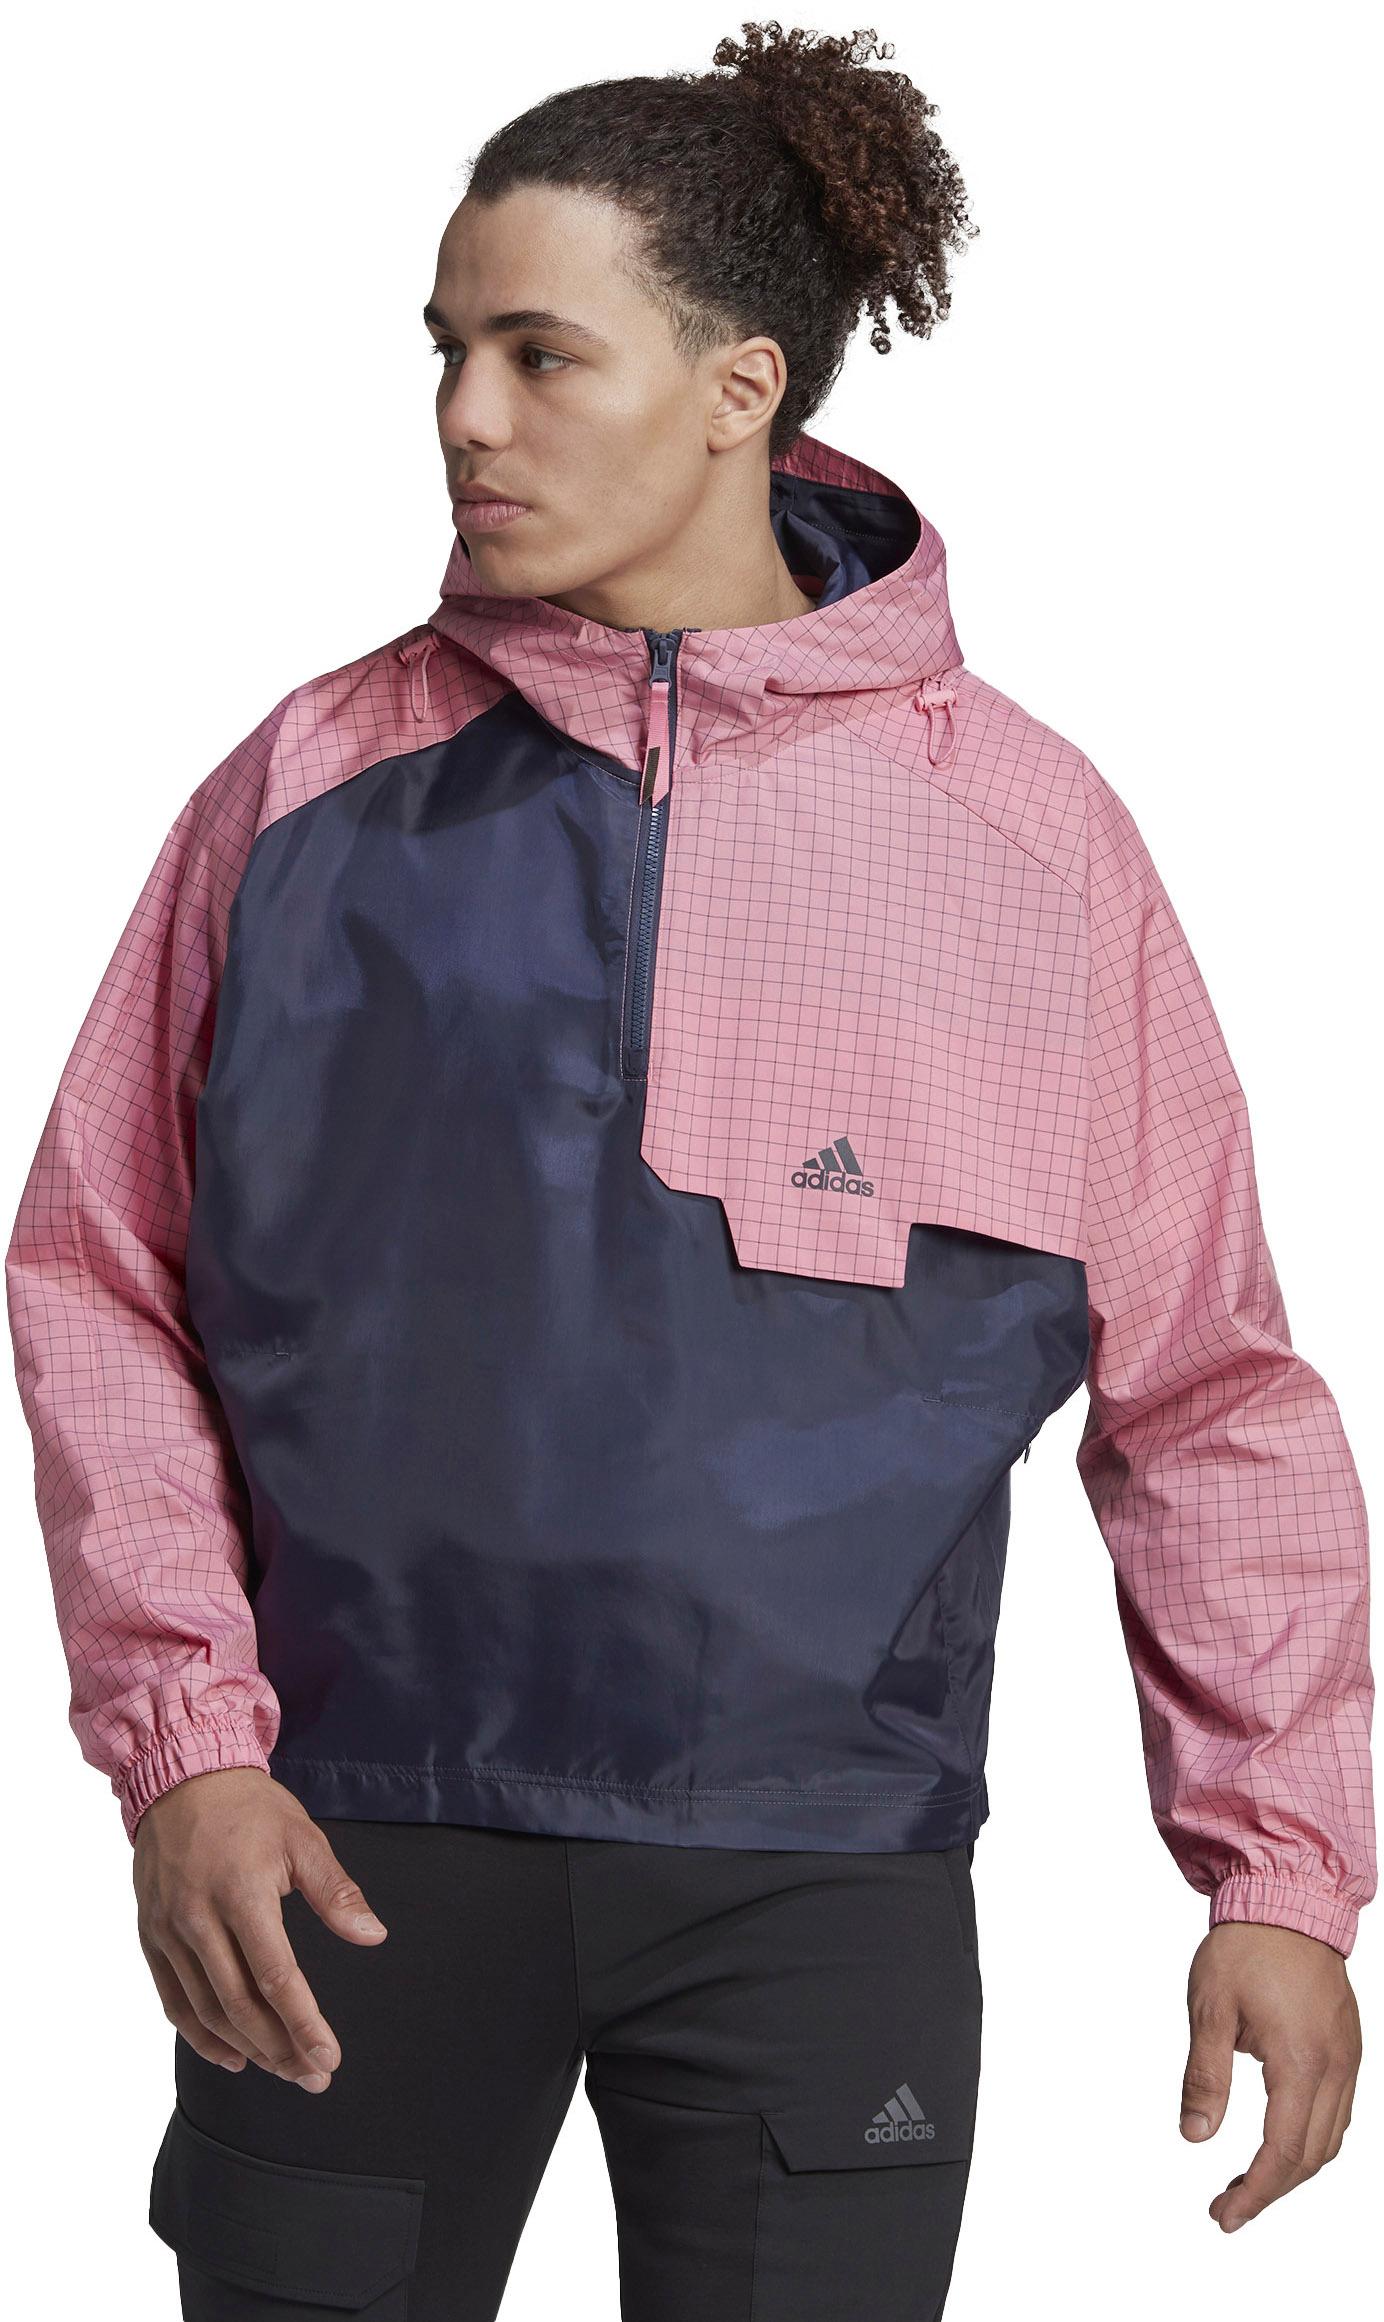 Adidas X-City Herren bliss pink-shadow navy im Online Shop von SportScheck kaufen